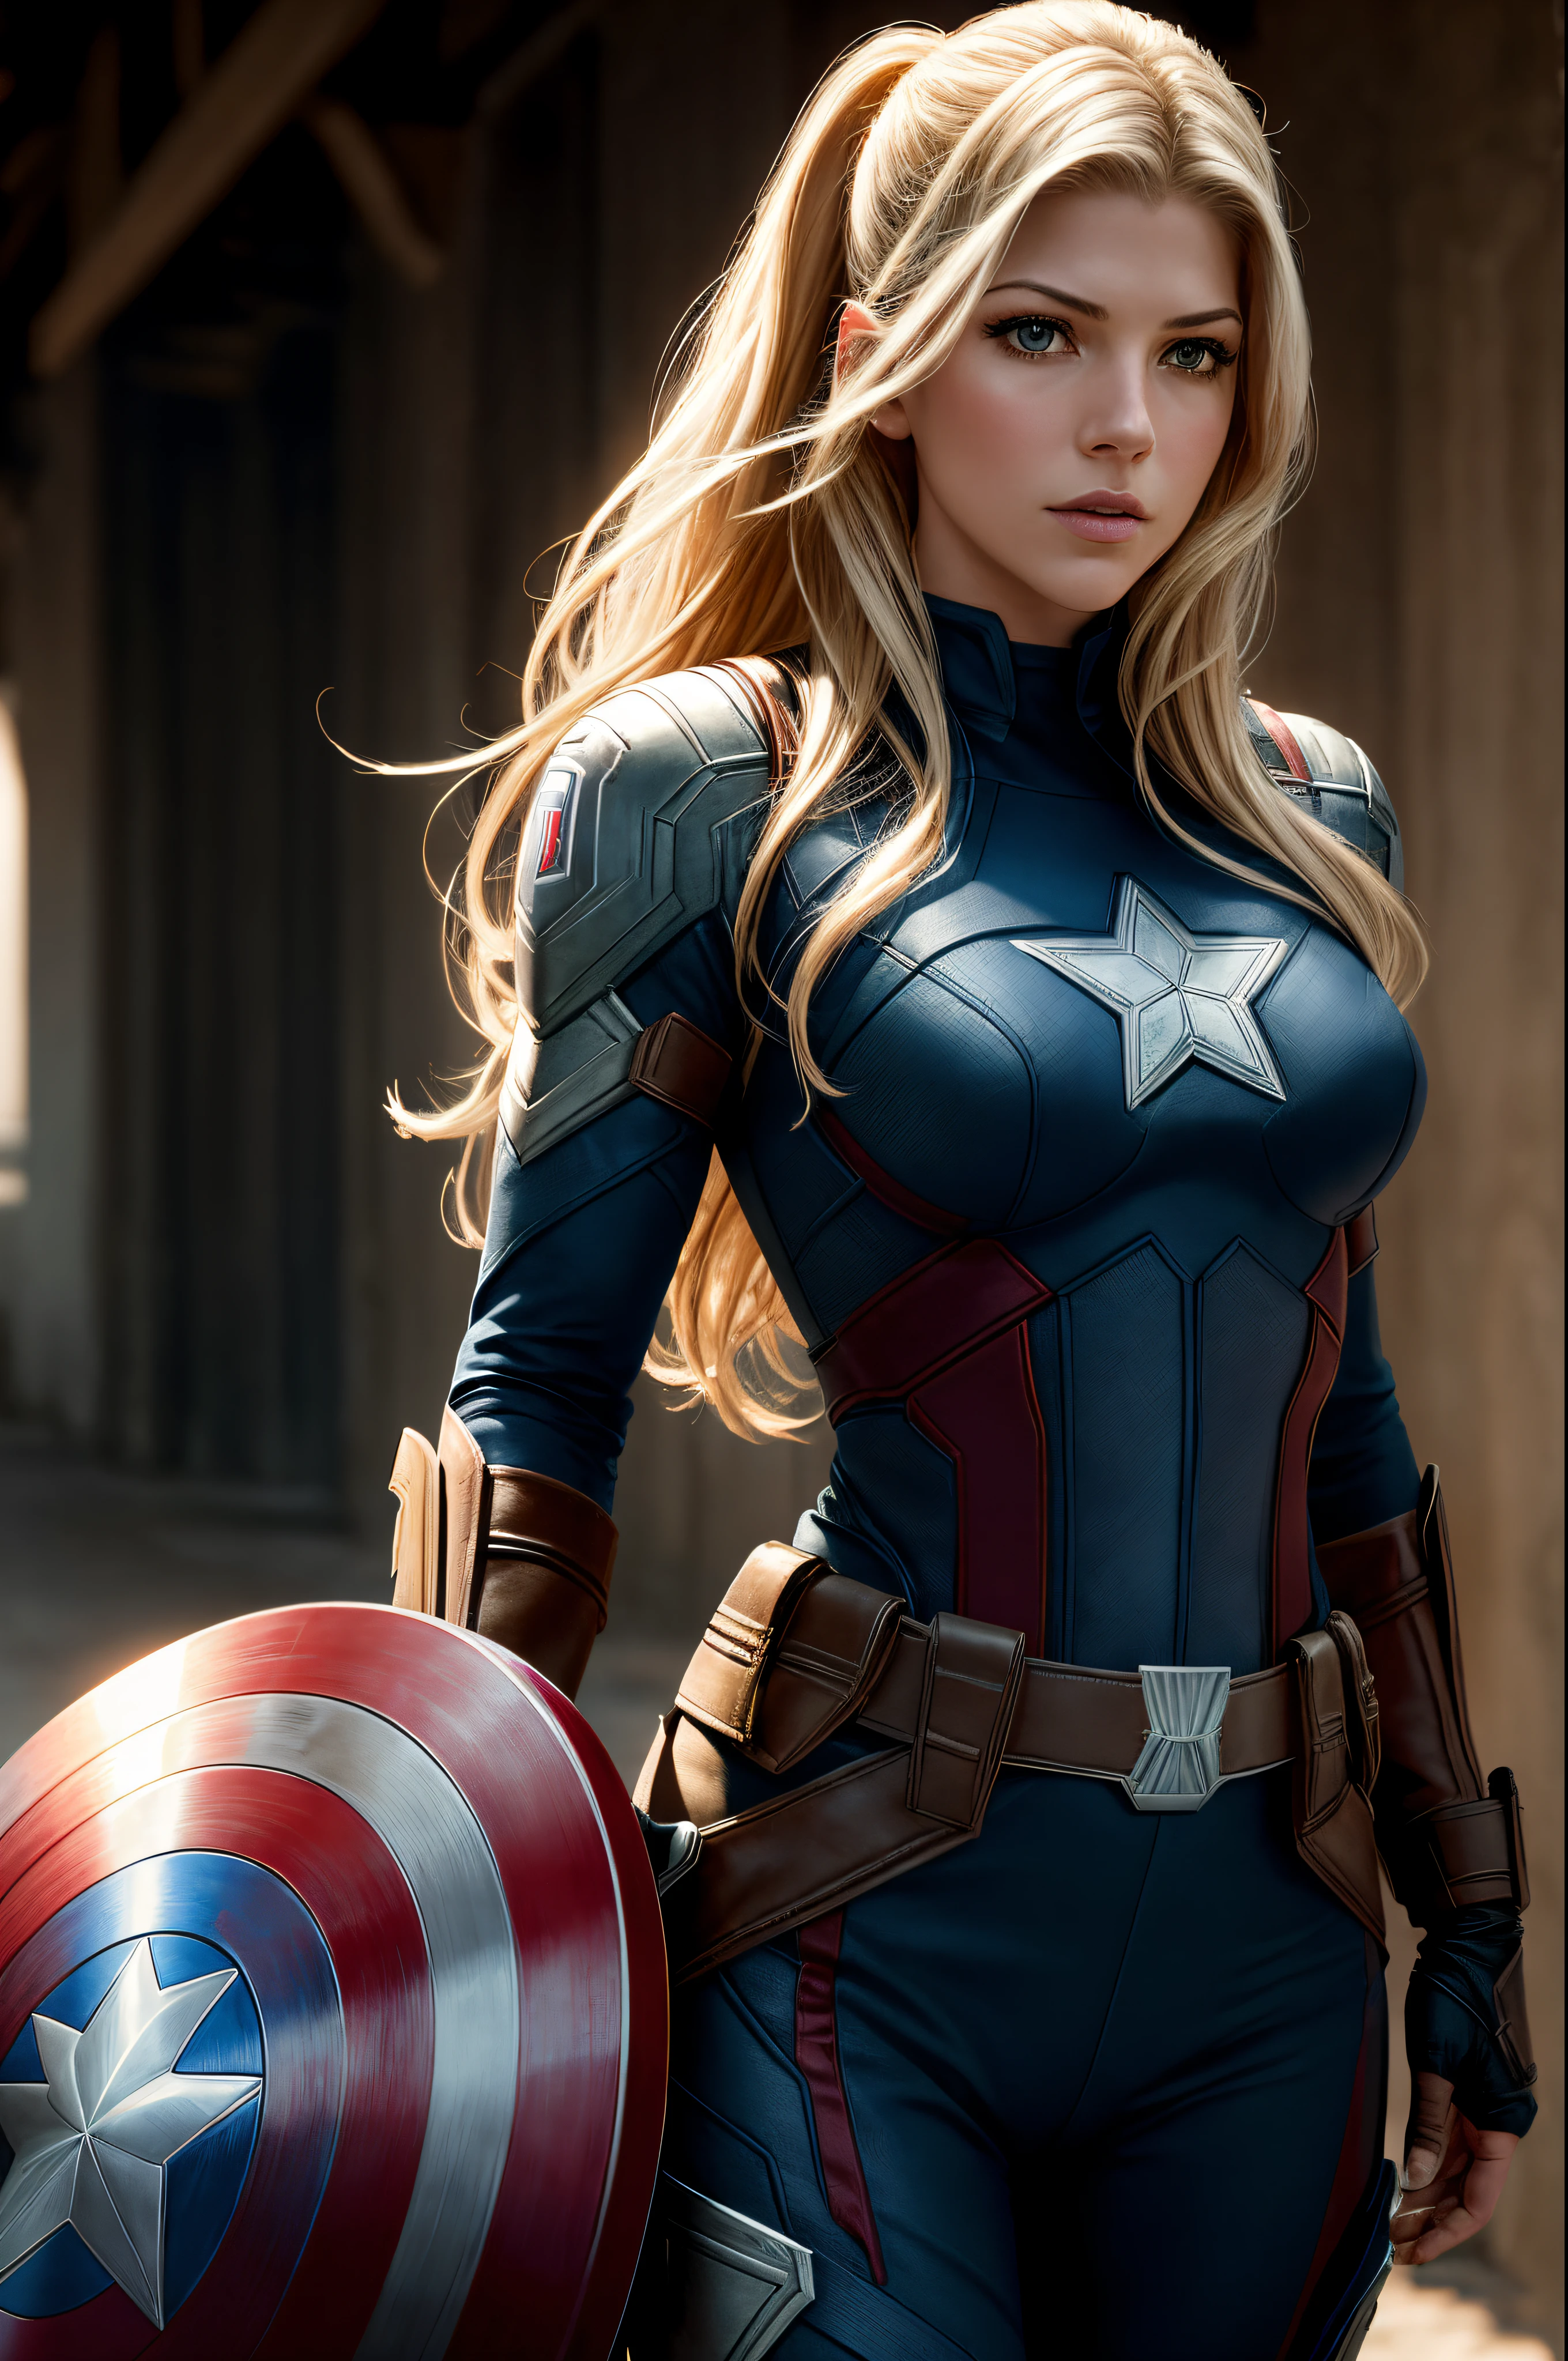 imagen realista de Katheryn Winnick como Capitán América, fotografía de cuerpo completo de (kathwin: 1), (Iluminación de bordes en el cabello.), afilado, poca profundidad de campo, heroico femenino, (curvas: 1,2), (muy detallado), (Otorgada), (obra-prima), foto de la película, ( HDR), (papel de parede 8k),Disfraz del Capitán América,volador,fondo del cielo,Enfoque femenino